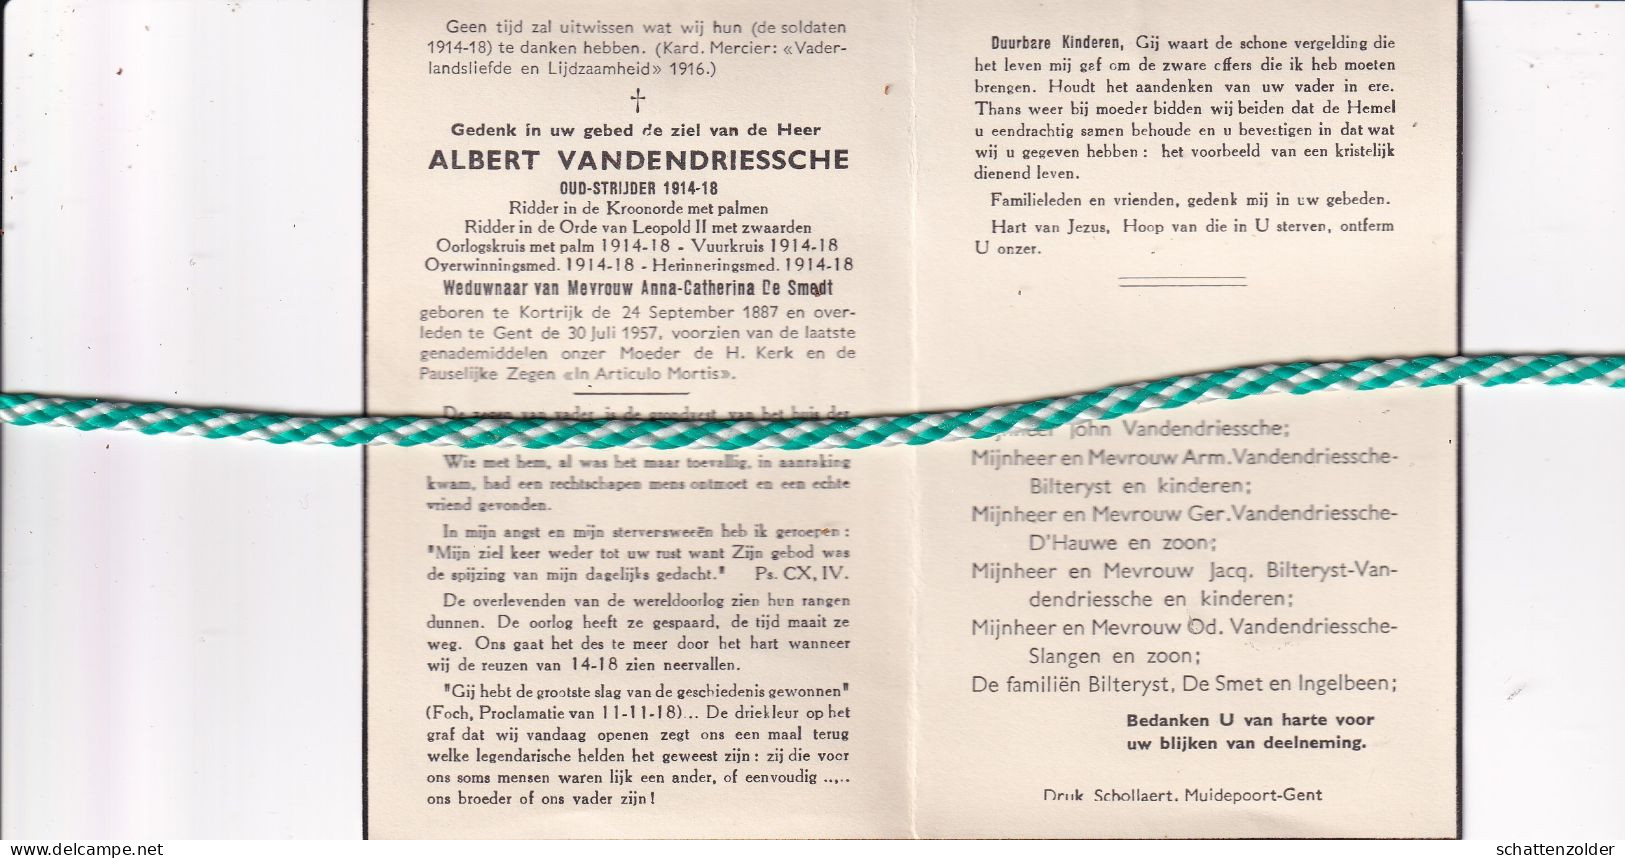 Albert Vandendriessche-De Smedt, Kortrijk 1887, Gent 1957. Oud-strijder Vuurkruiser 14-18 - Todesanzeige